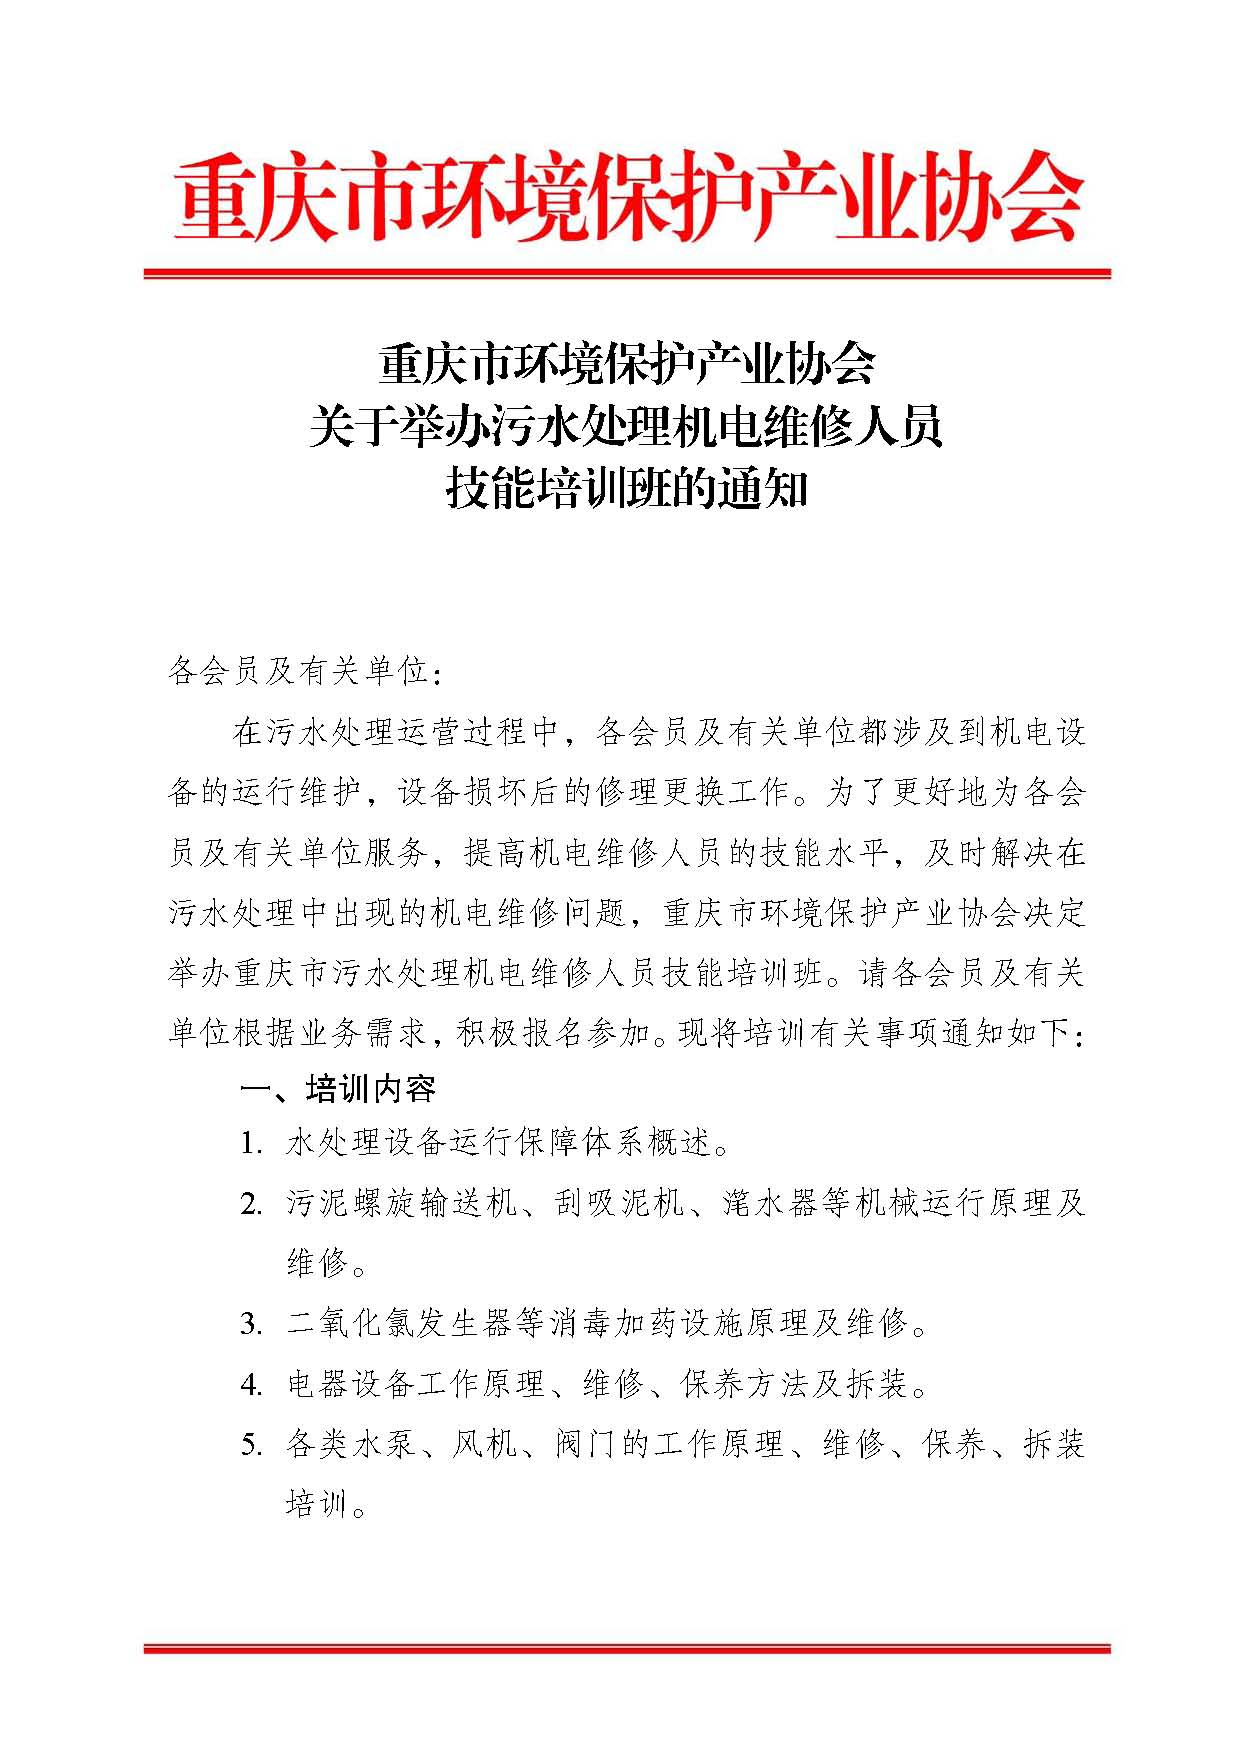 重庆市环境保护产业协会关于举办污水处理机电维修人员技能培训班的通知x_页面_1